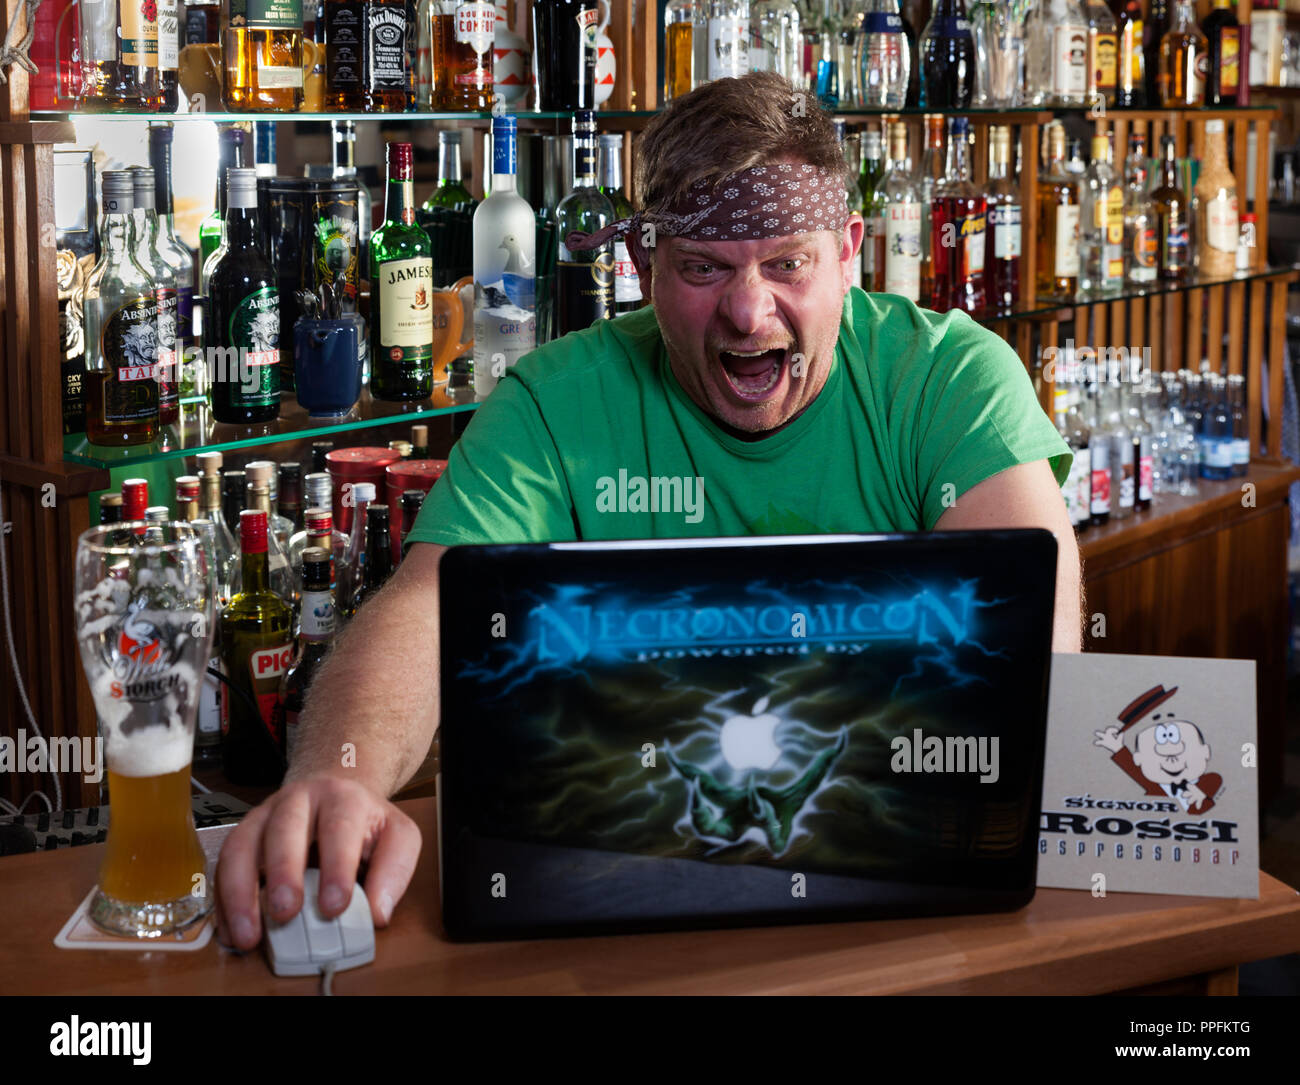 L'homme dans un café internet a l'air sur l'ordinateur portable et les cris en état de choc, symbole de droit pour surfer sur internet. Allemagne Banque D'Images